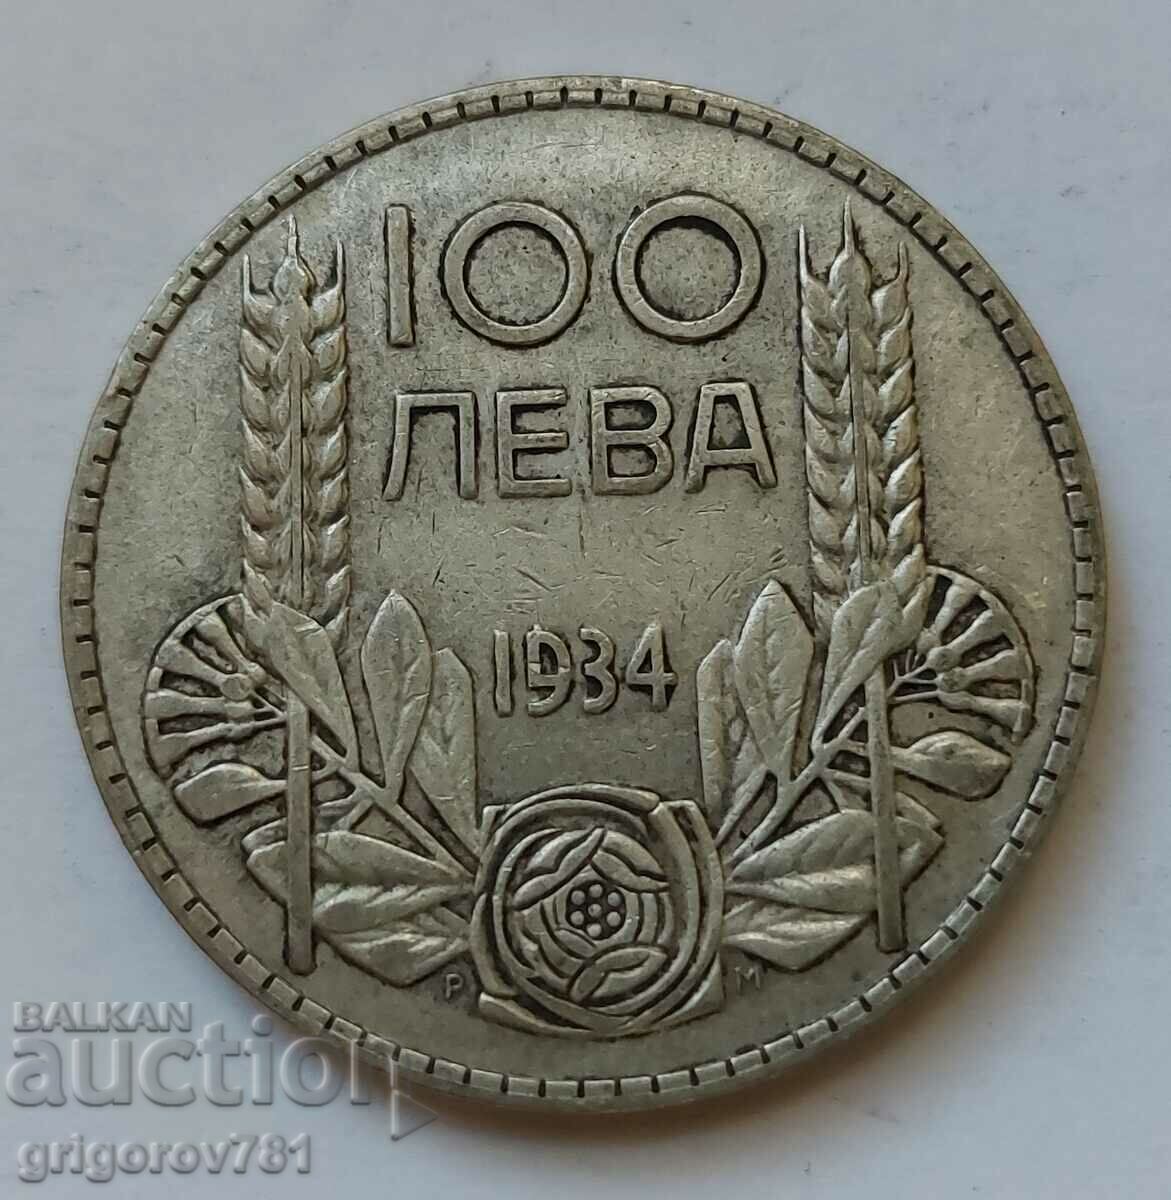 100 leva silver Bulgaria 1934 - silver coin #127